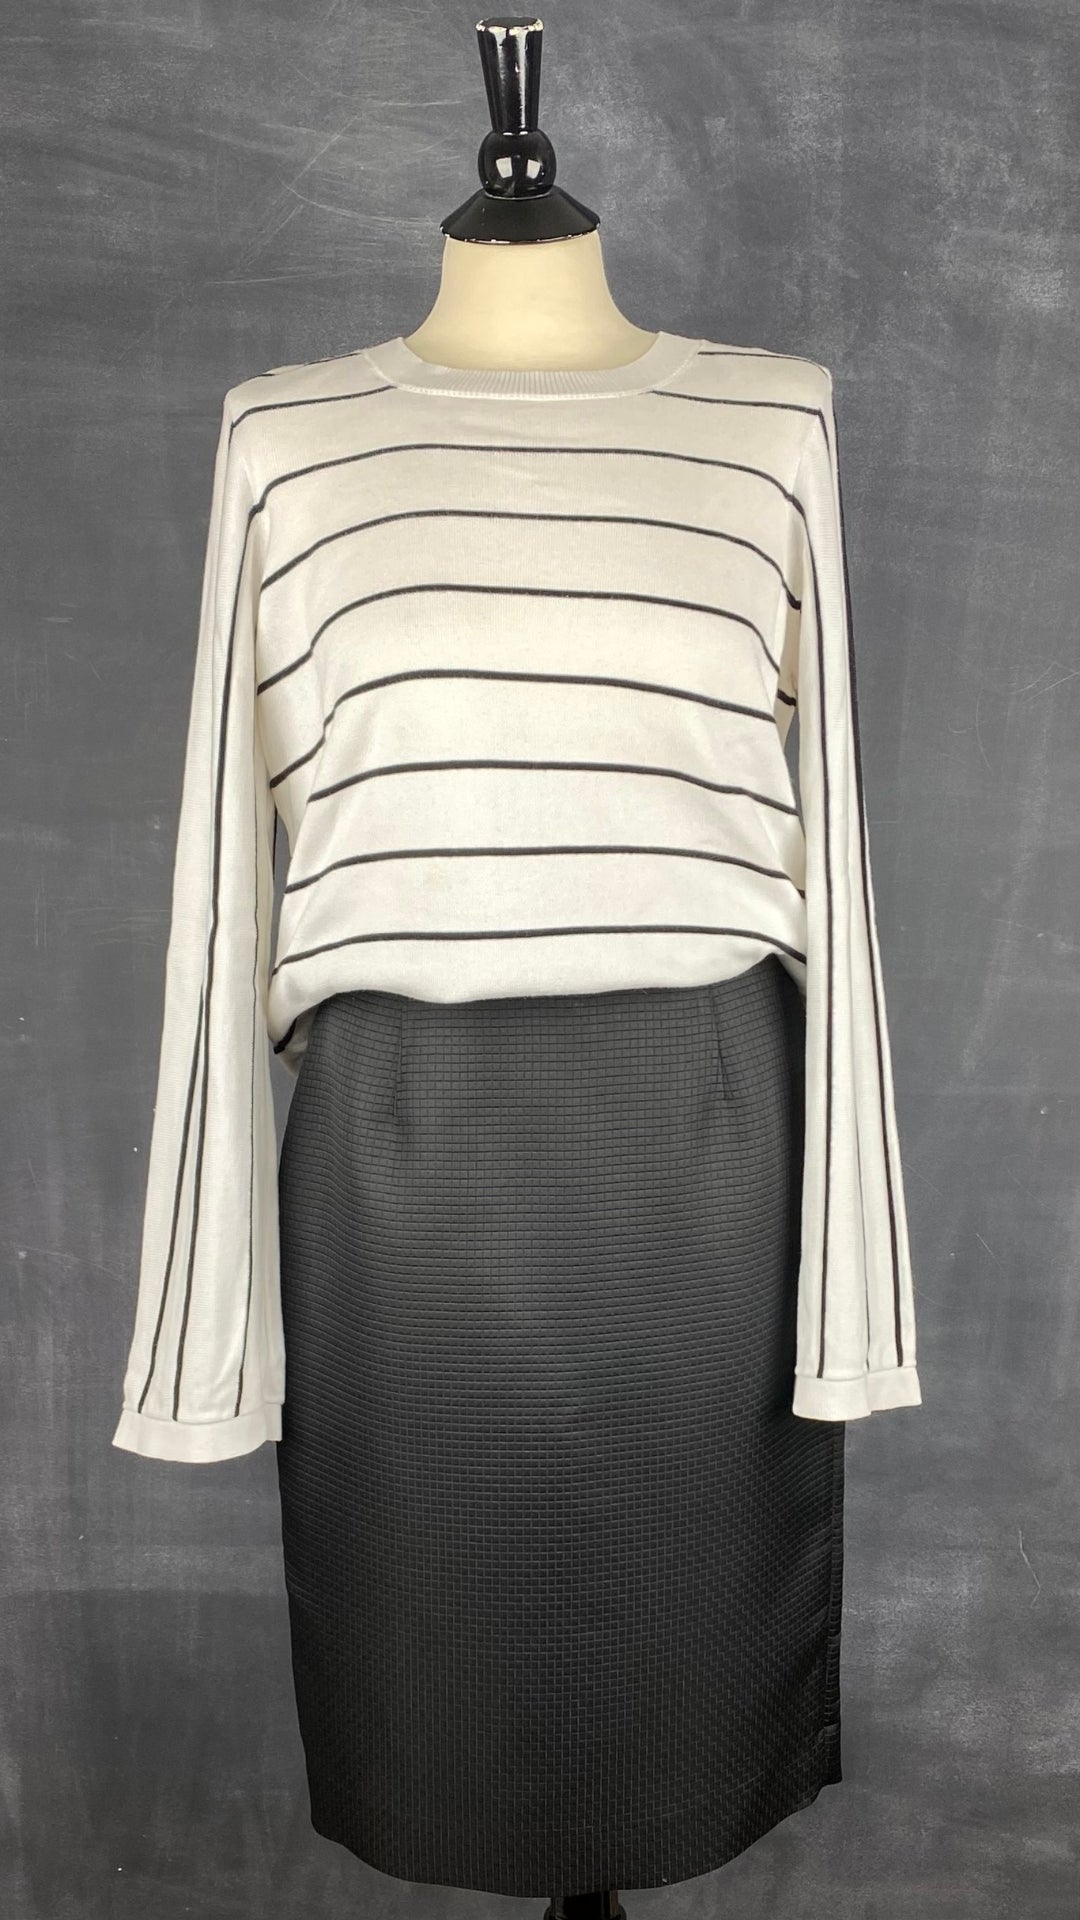 Jupe crayon noire texturée Calvin Klein, taille 6. Vue de l'agencement avec le tricot crème rayures noires.